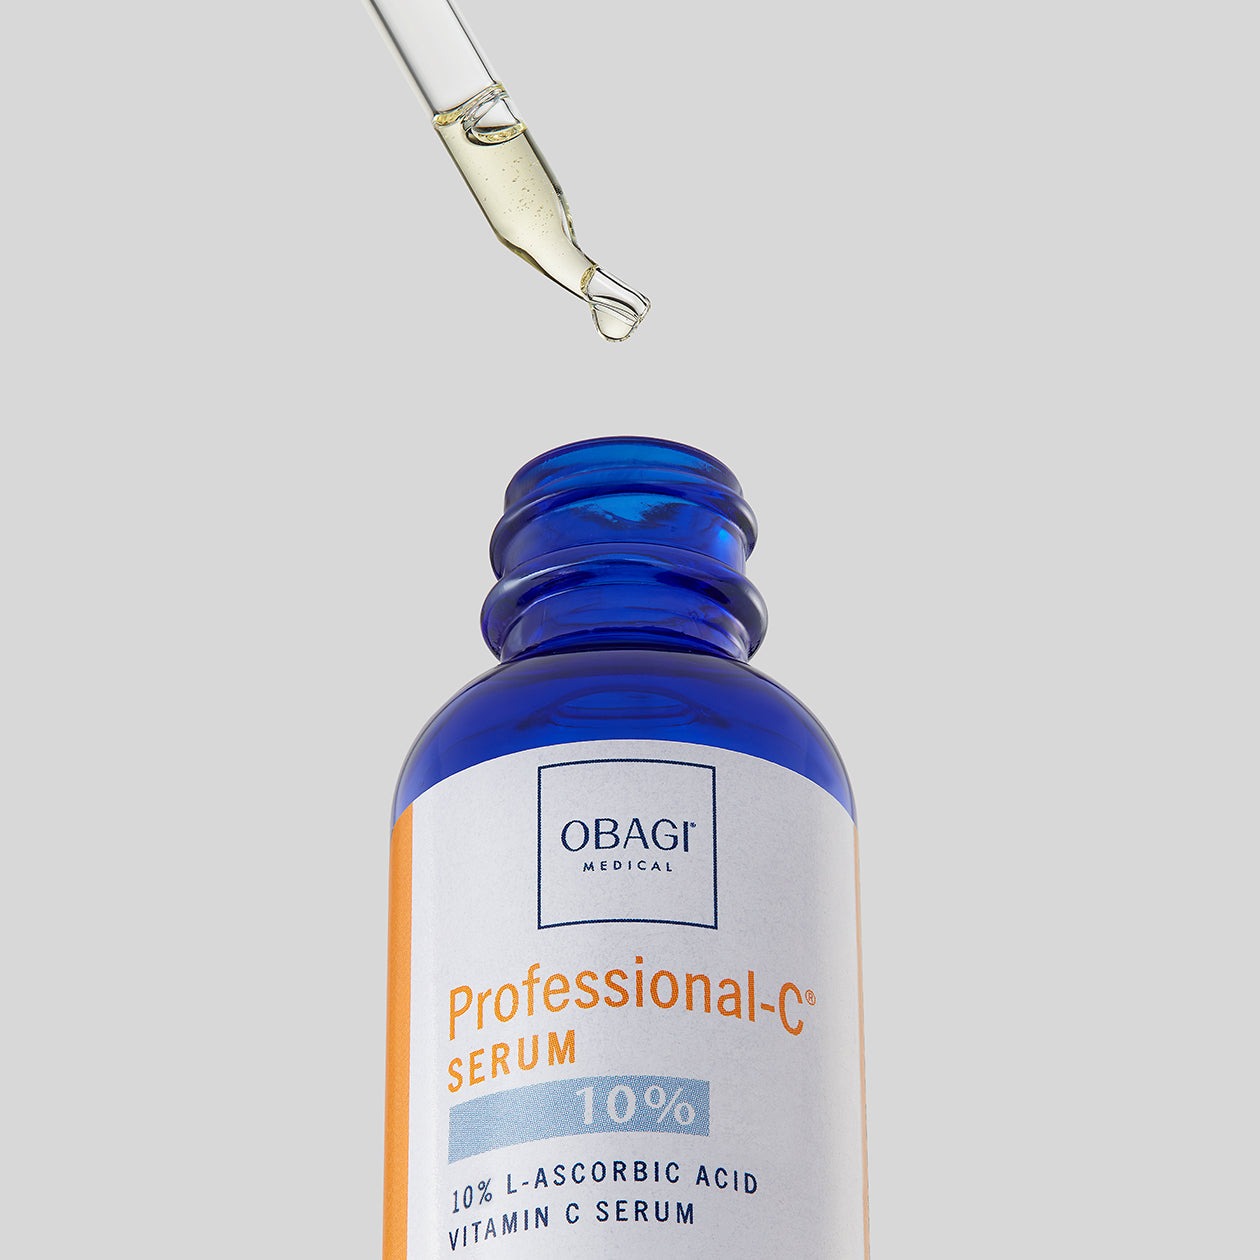 Obagi Professional-C Serum 15% Antioxidant Vitamin C Serum - 1 Oz-1